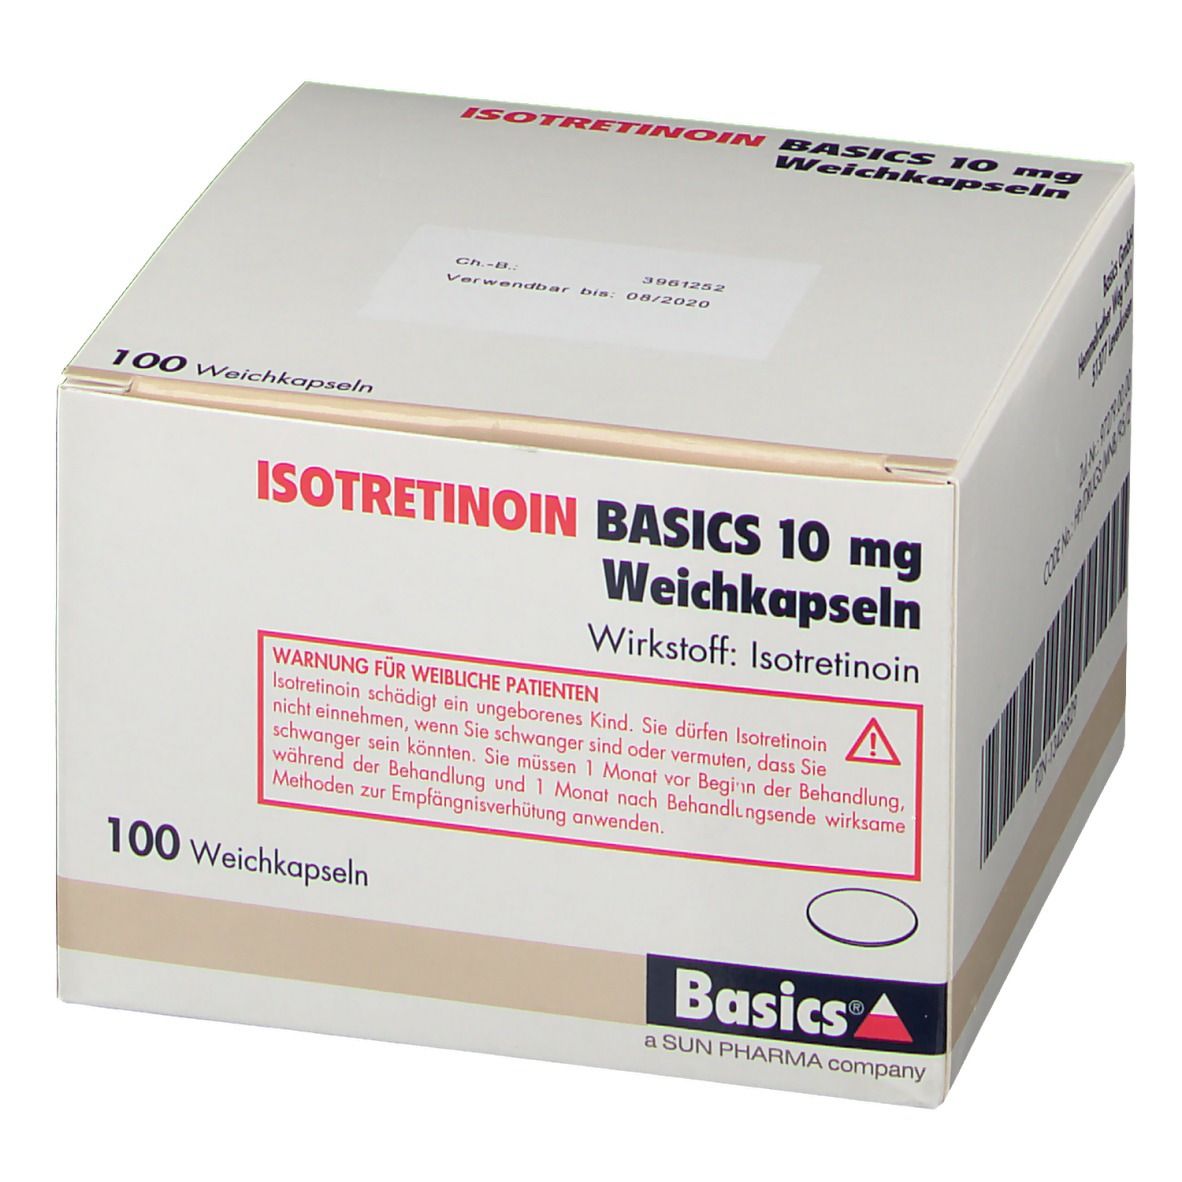 Der Nr. 1 Tamoximed 20 mg Balkan Pharmaceuticals Fehler, den Sie machen